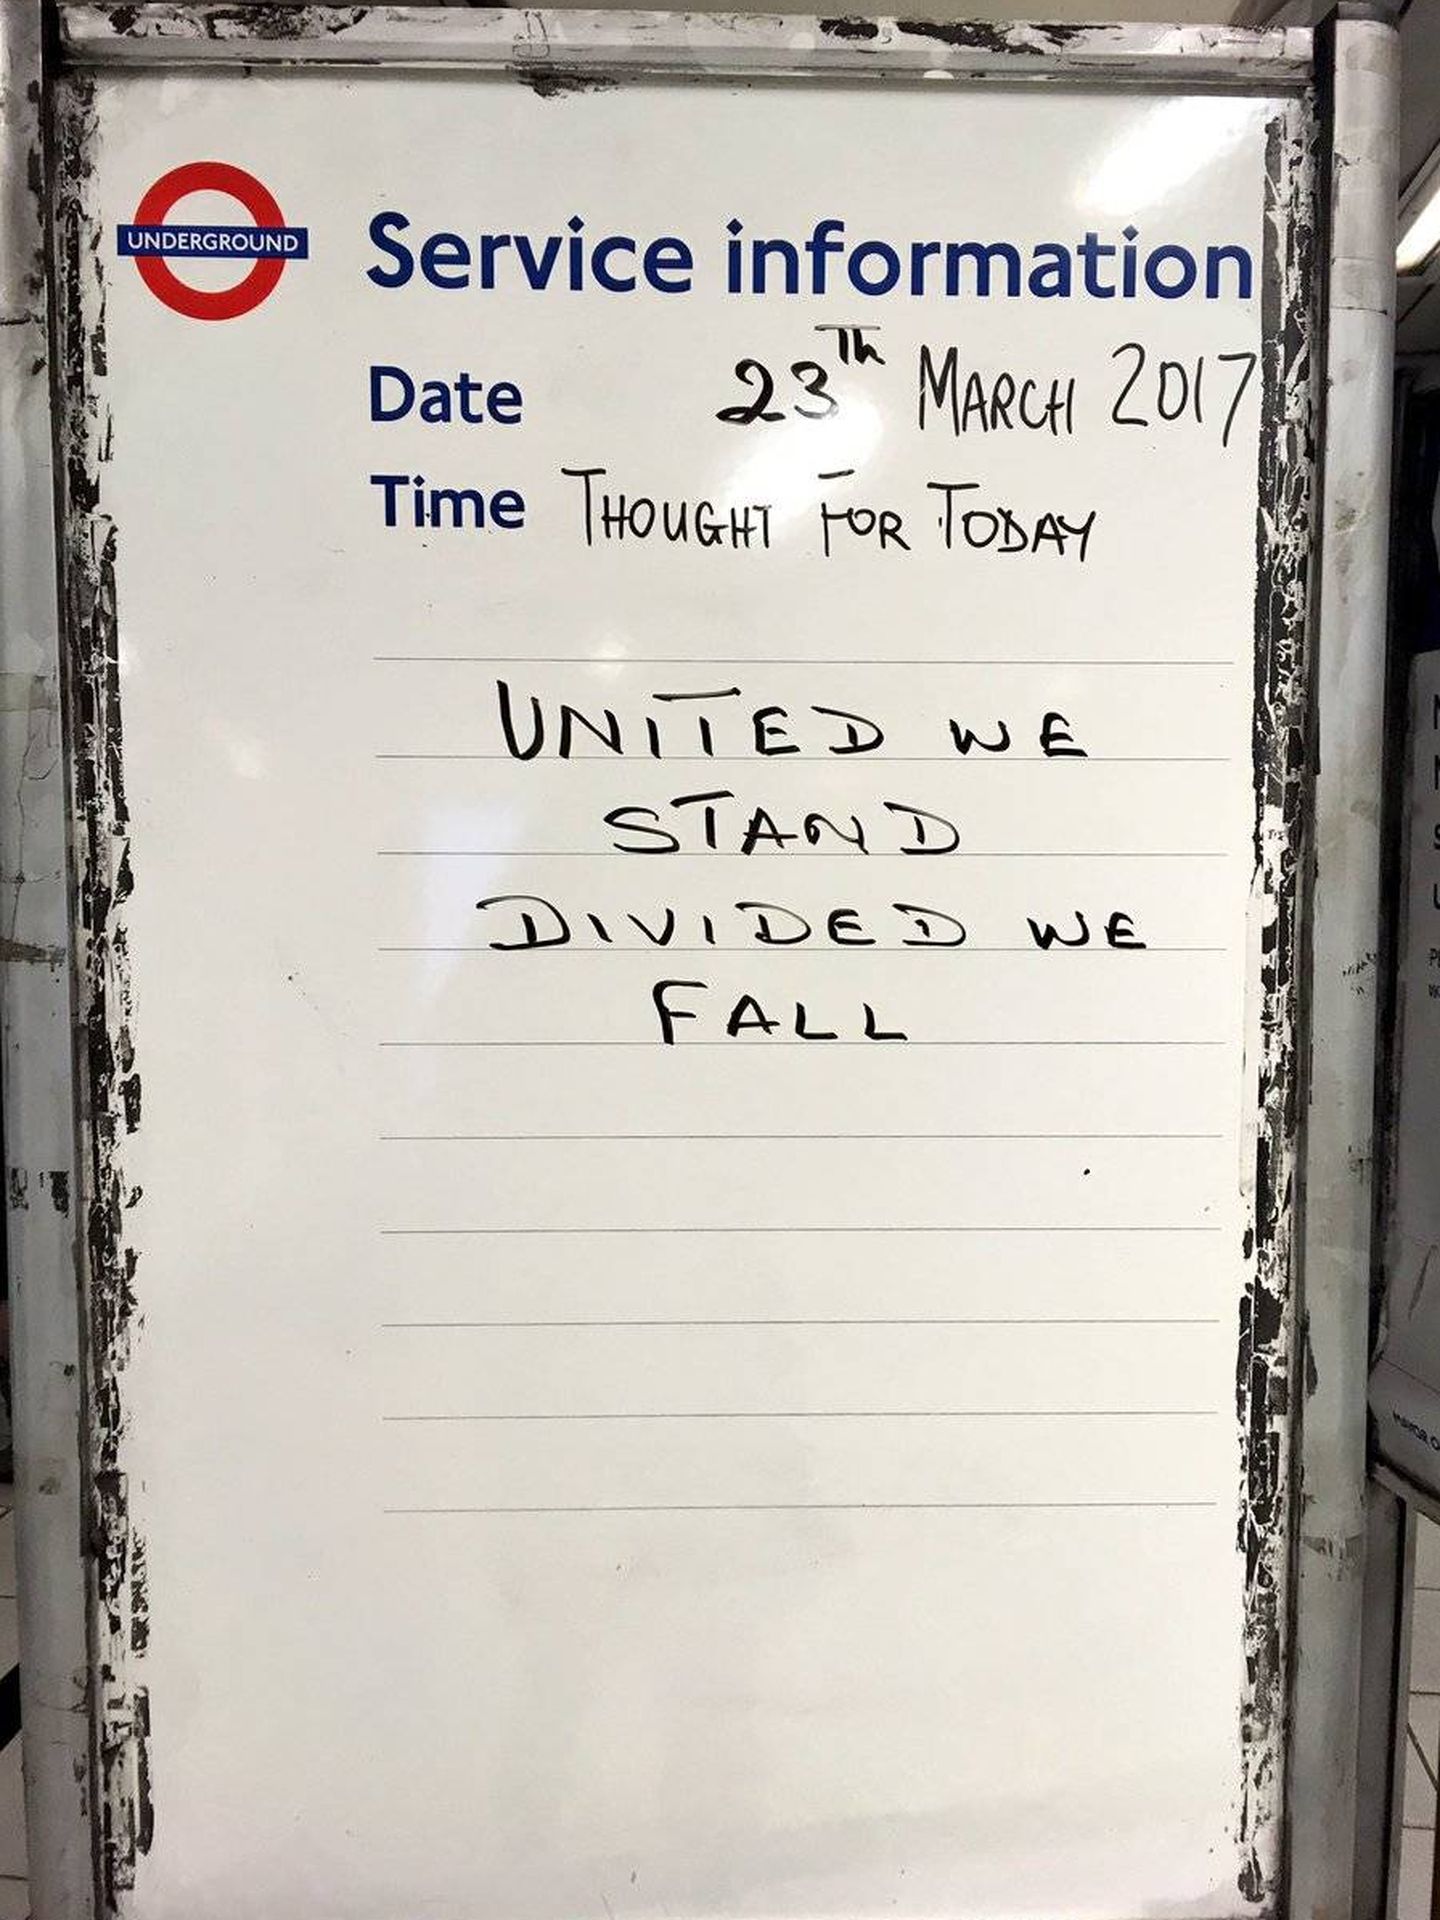 Mensaje en una pizarra del metro de Londres. (Fuente: Twitter)